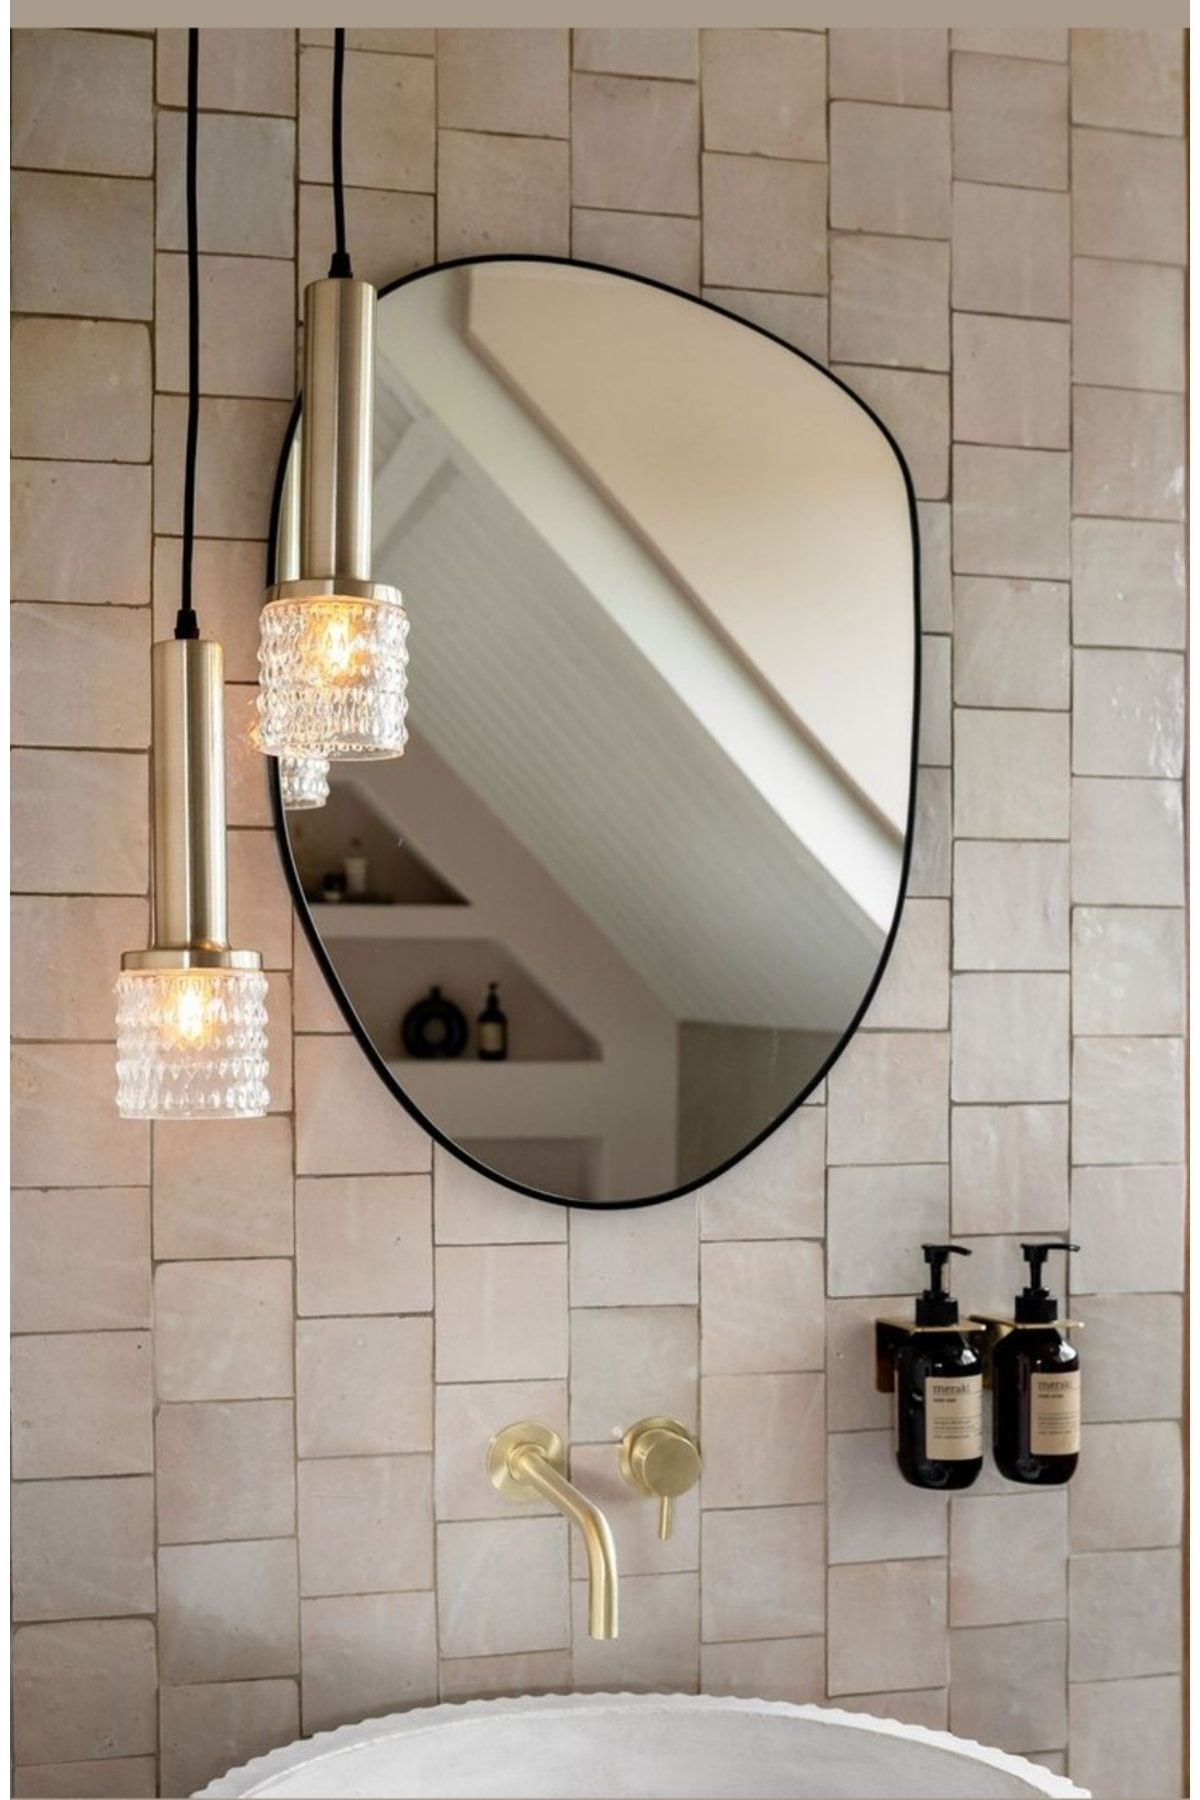 CG HOME Asimetrik Ayna, Dekoratif Ayna, Konsol Aynası, Dresuar Aynası, Tuvalet Aynası. 1.kalite